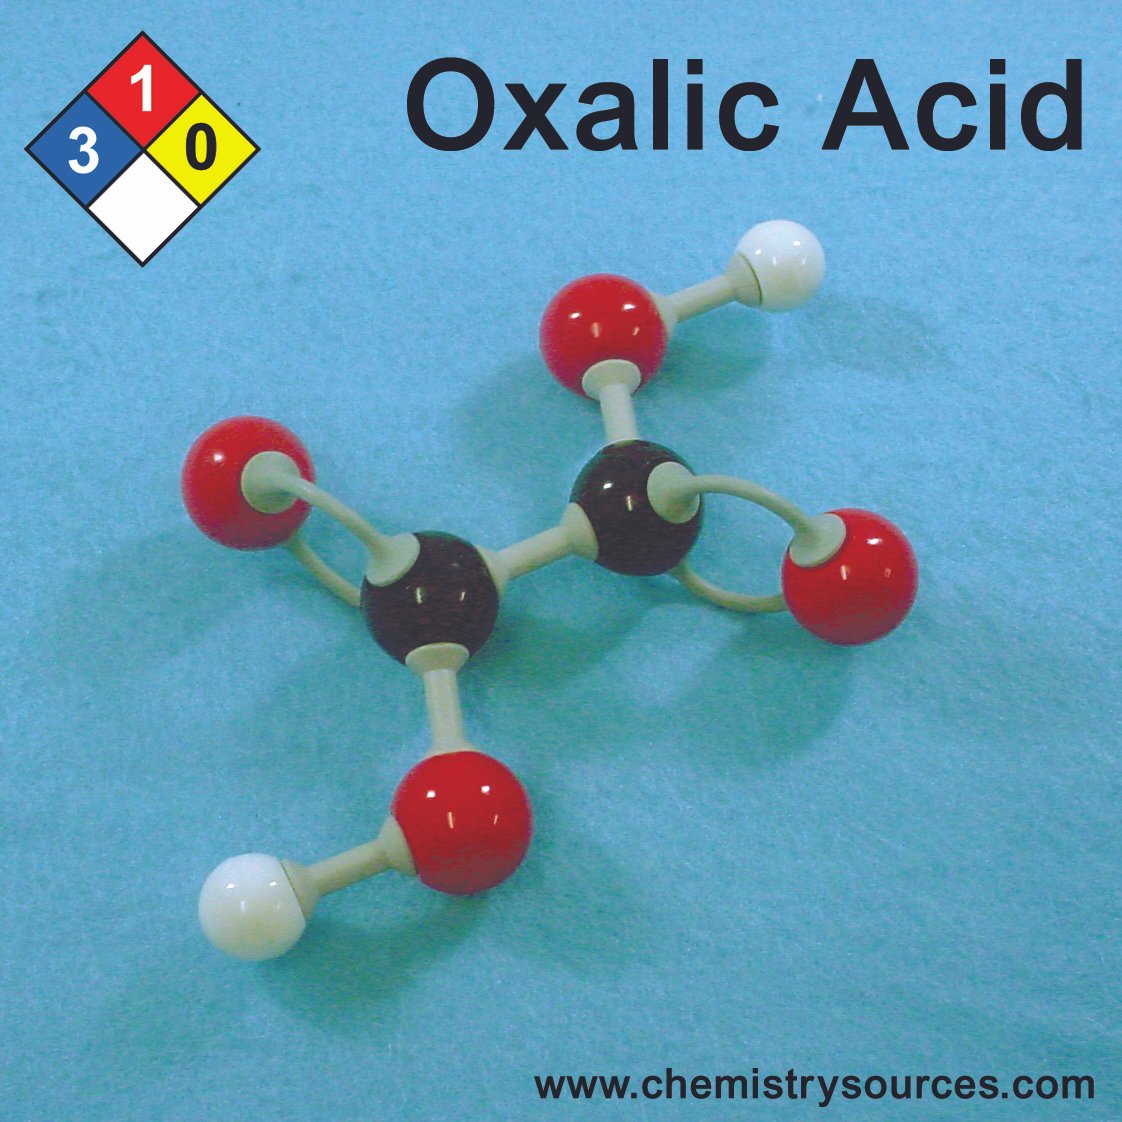 حمض الأكساليك (حمض الأوكساليك) Oxalic Acid